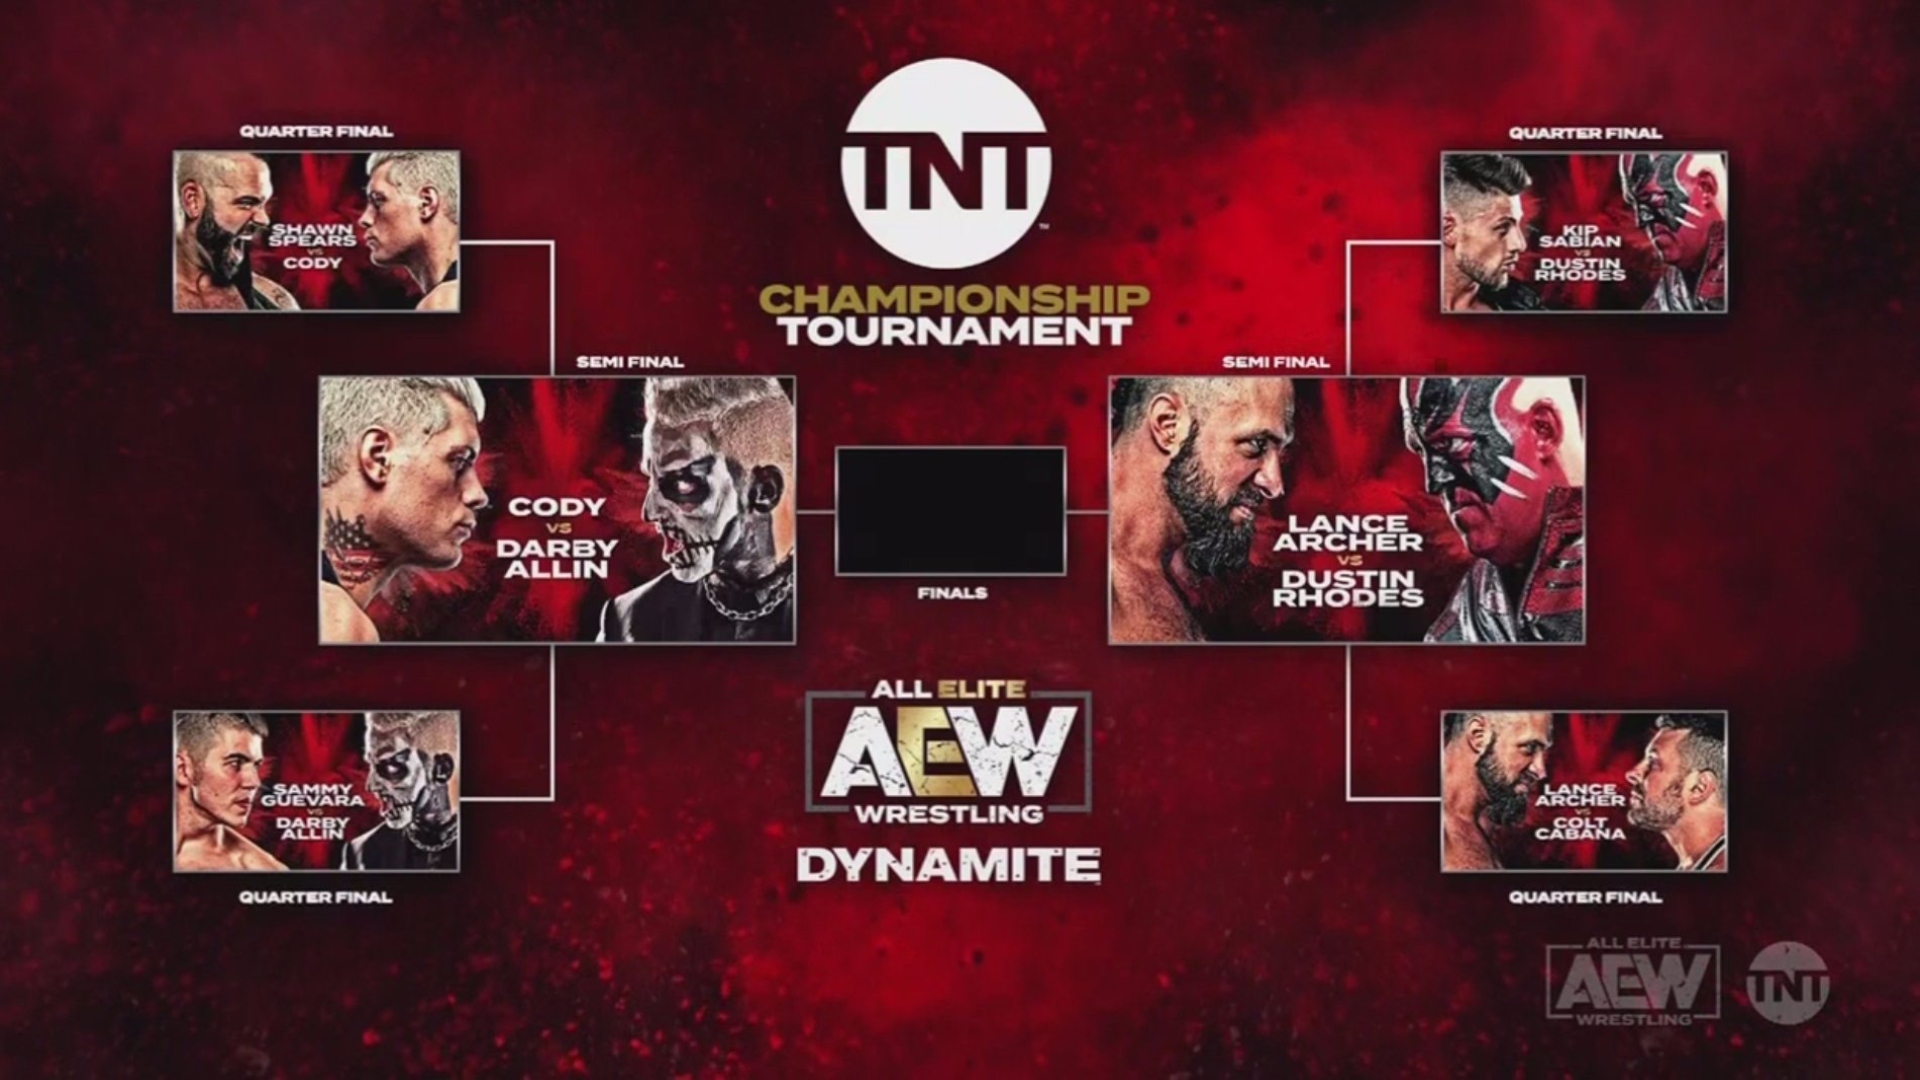 AEW TNT Championsip tournament round 1